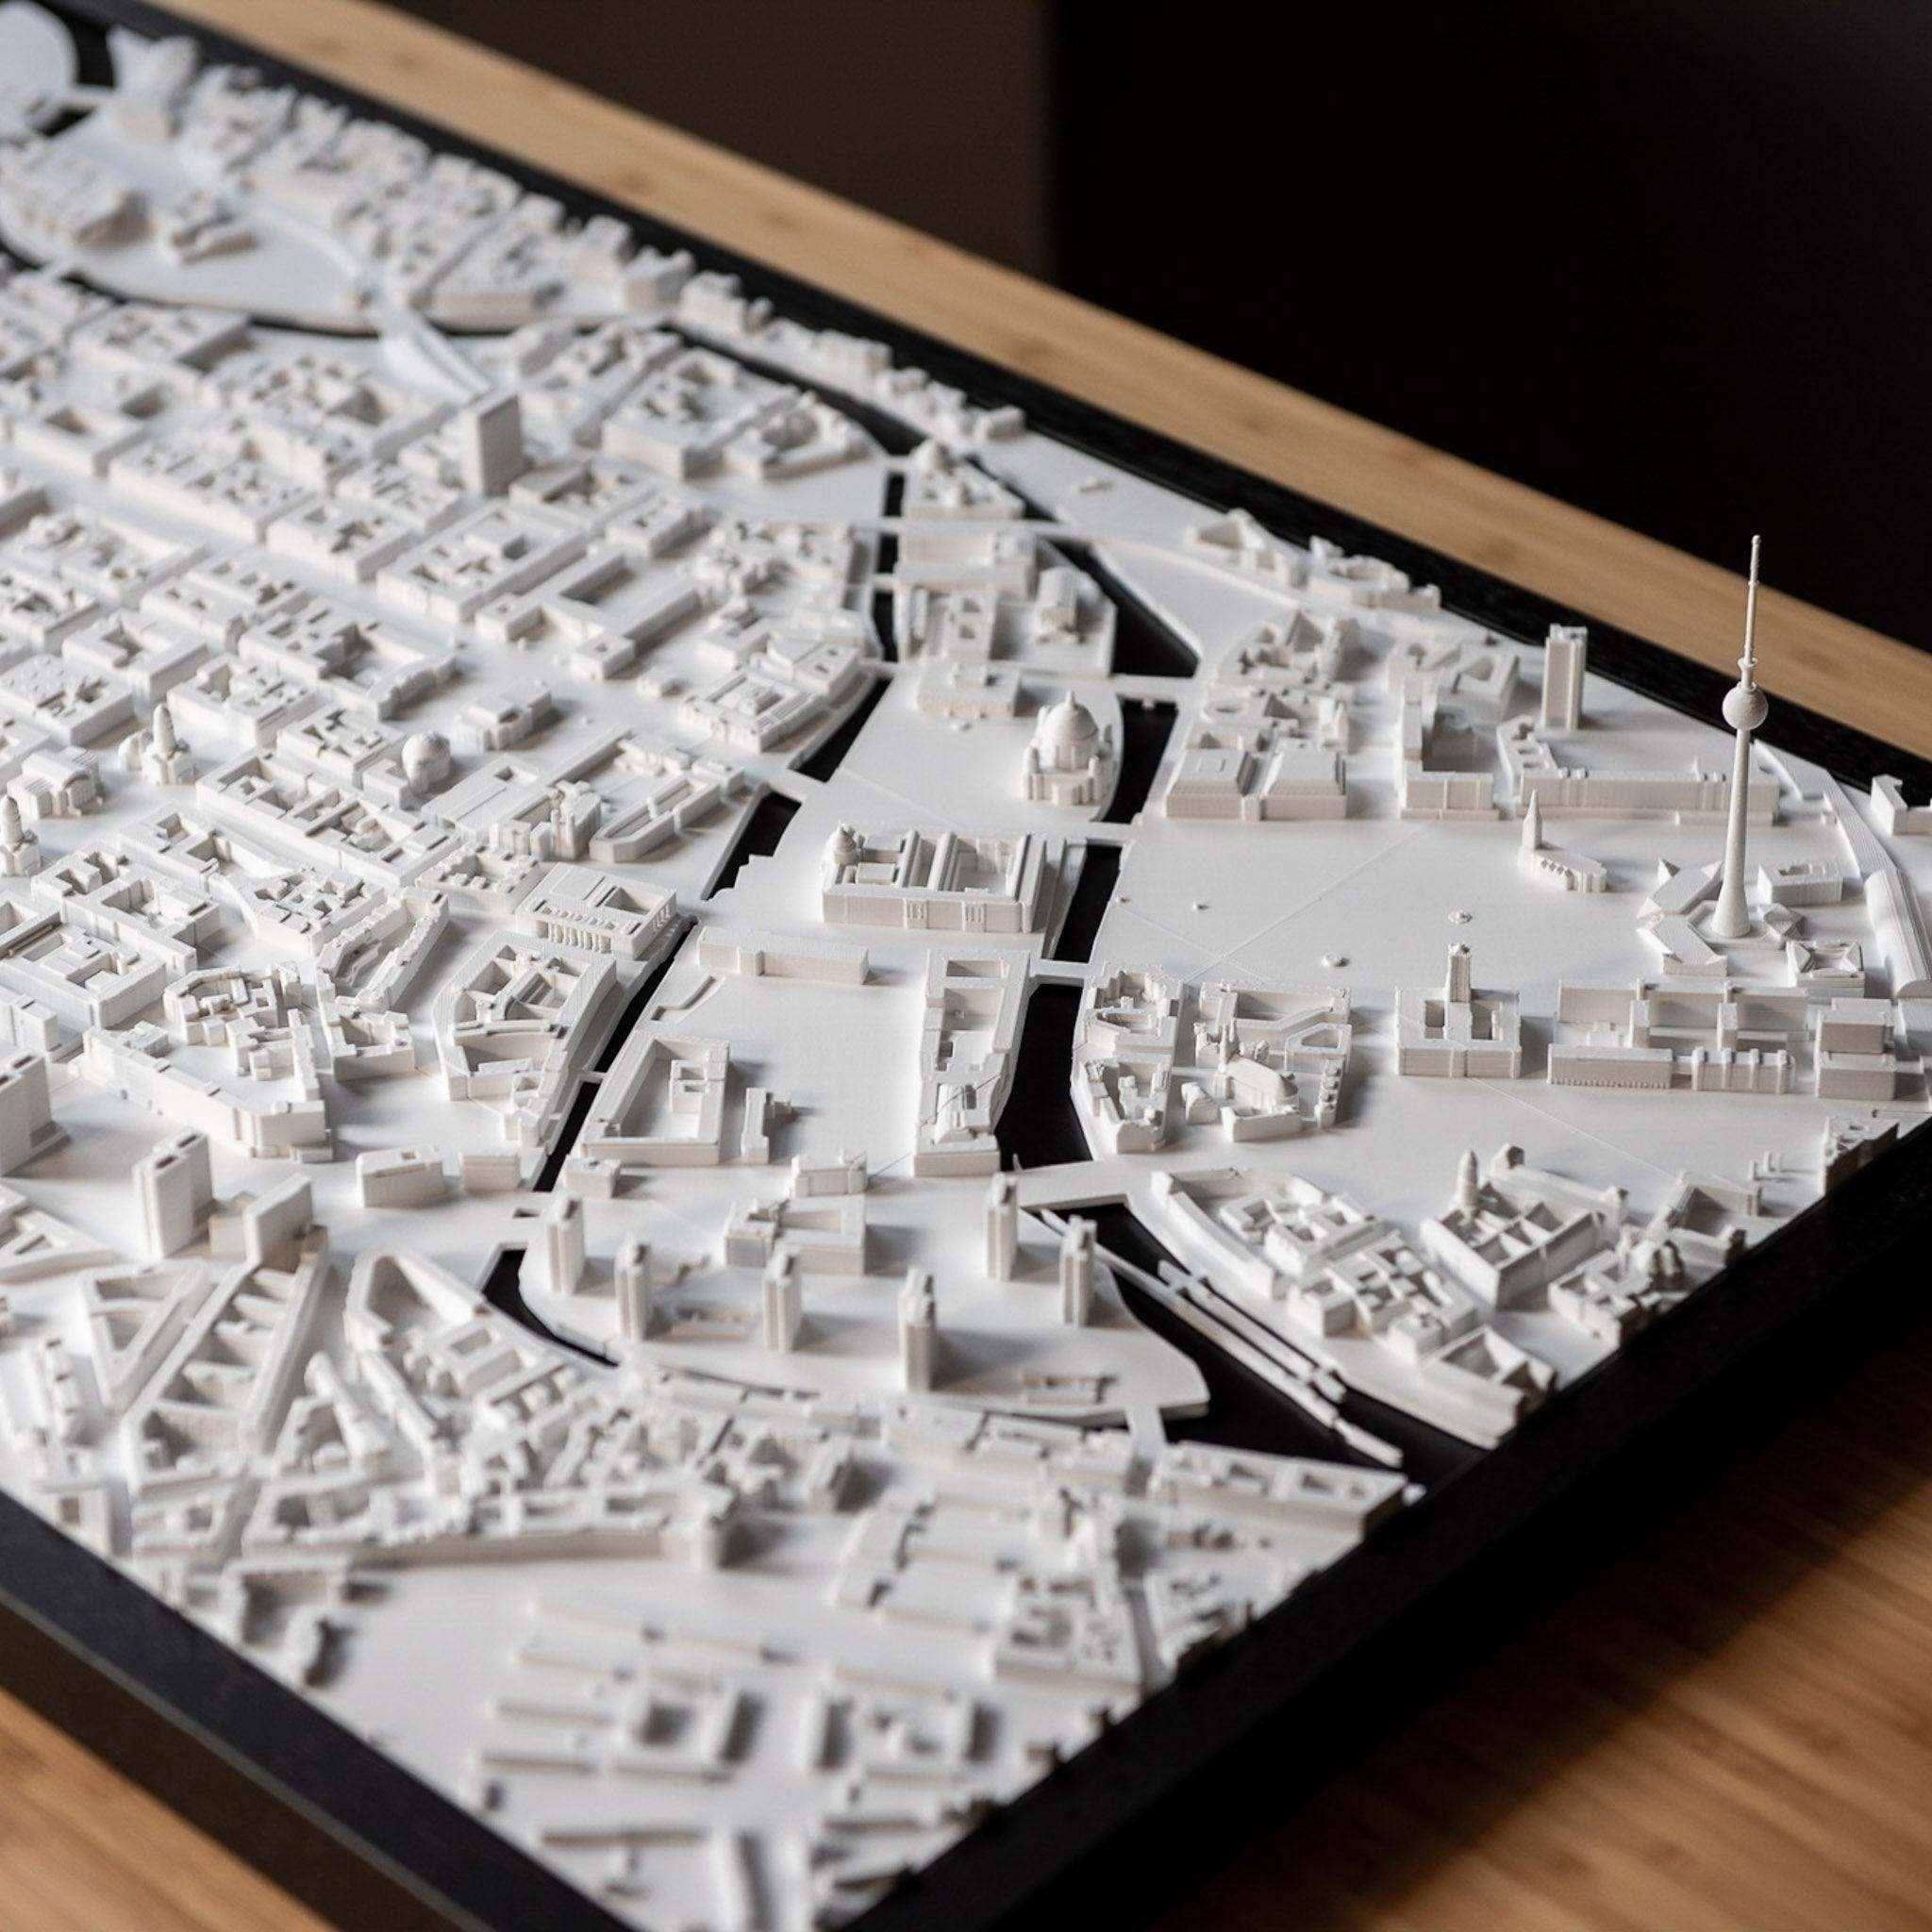 Berlin Frame 3D City Model Europe, Frame - CITYFRAMES